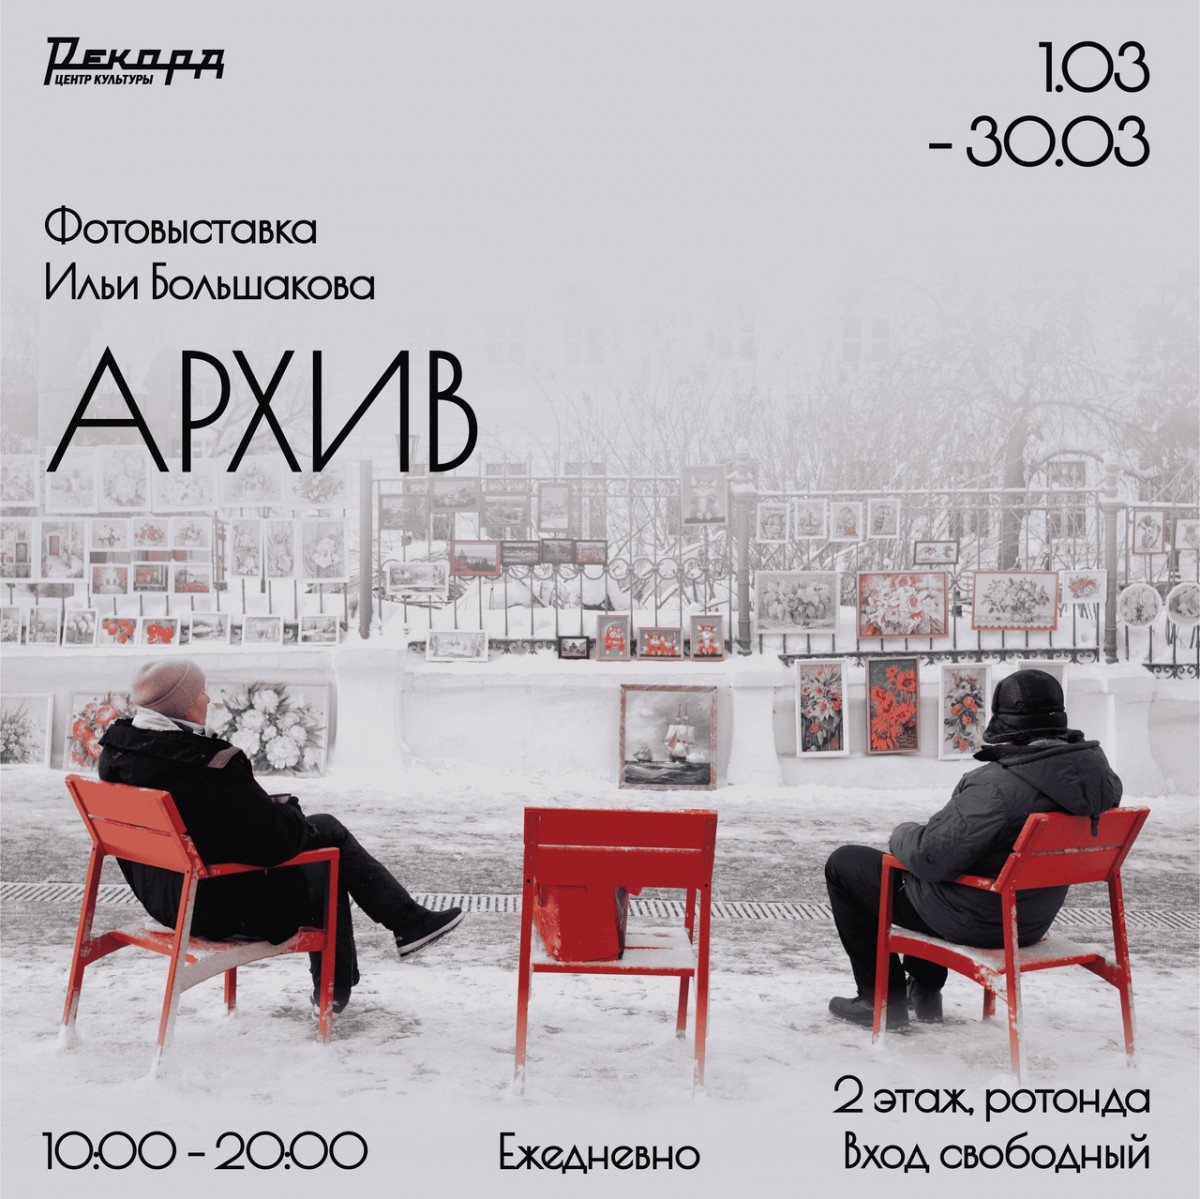 Фотовыставка Ильи Большакова пройдет в Нижнем Новгороде